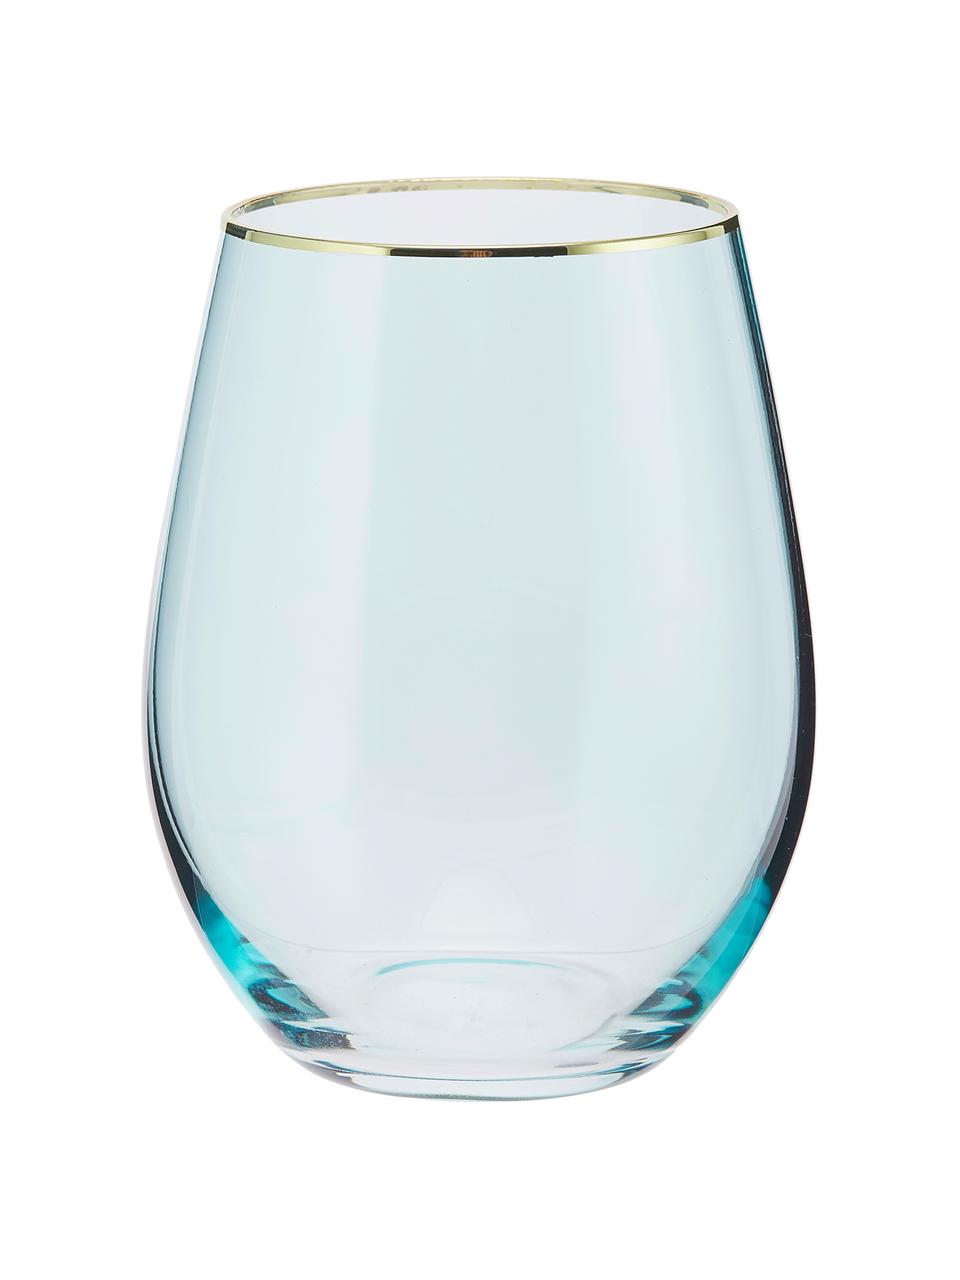 Bicchiere acqua con bordo dorato Chloe 4 pz, Vetro, Azzurro, dorato, Ø 9 x Alt. 12 cm